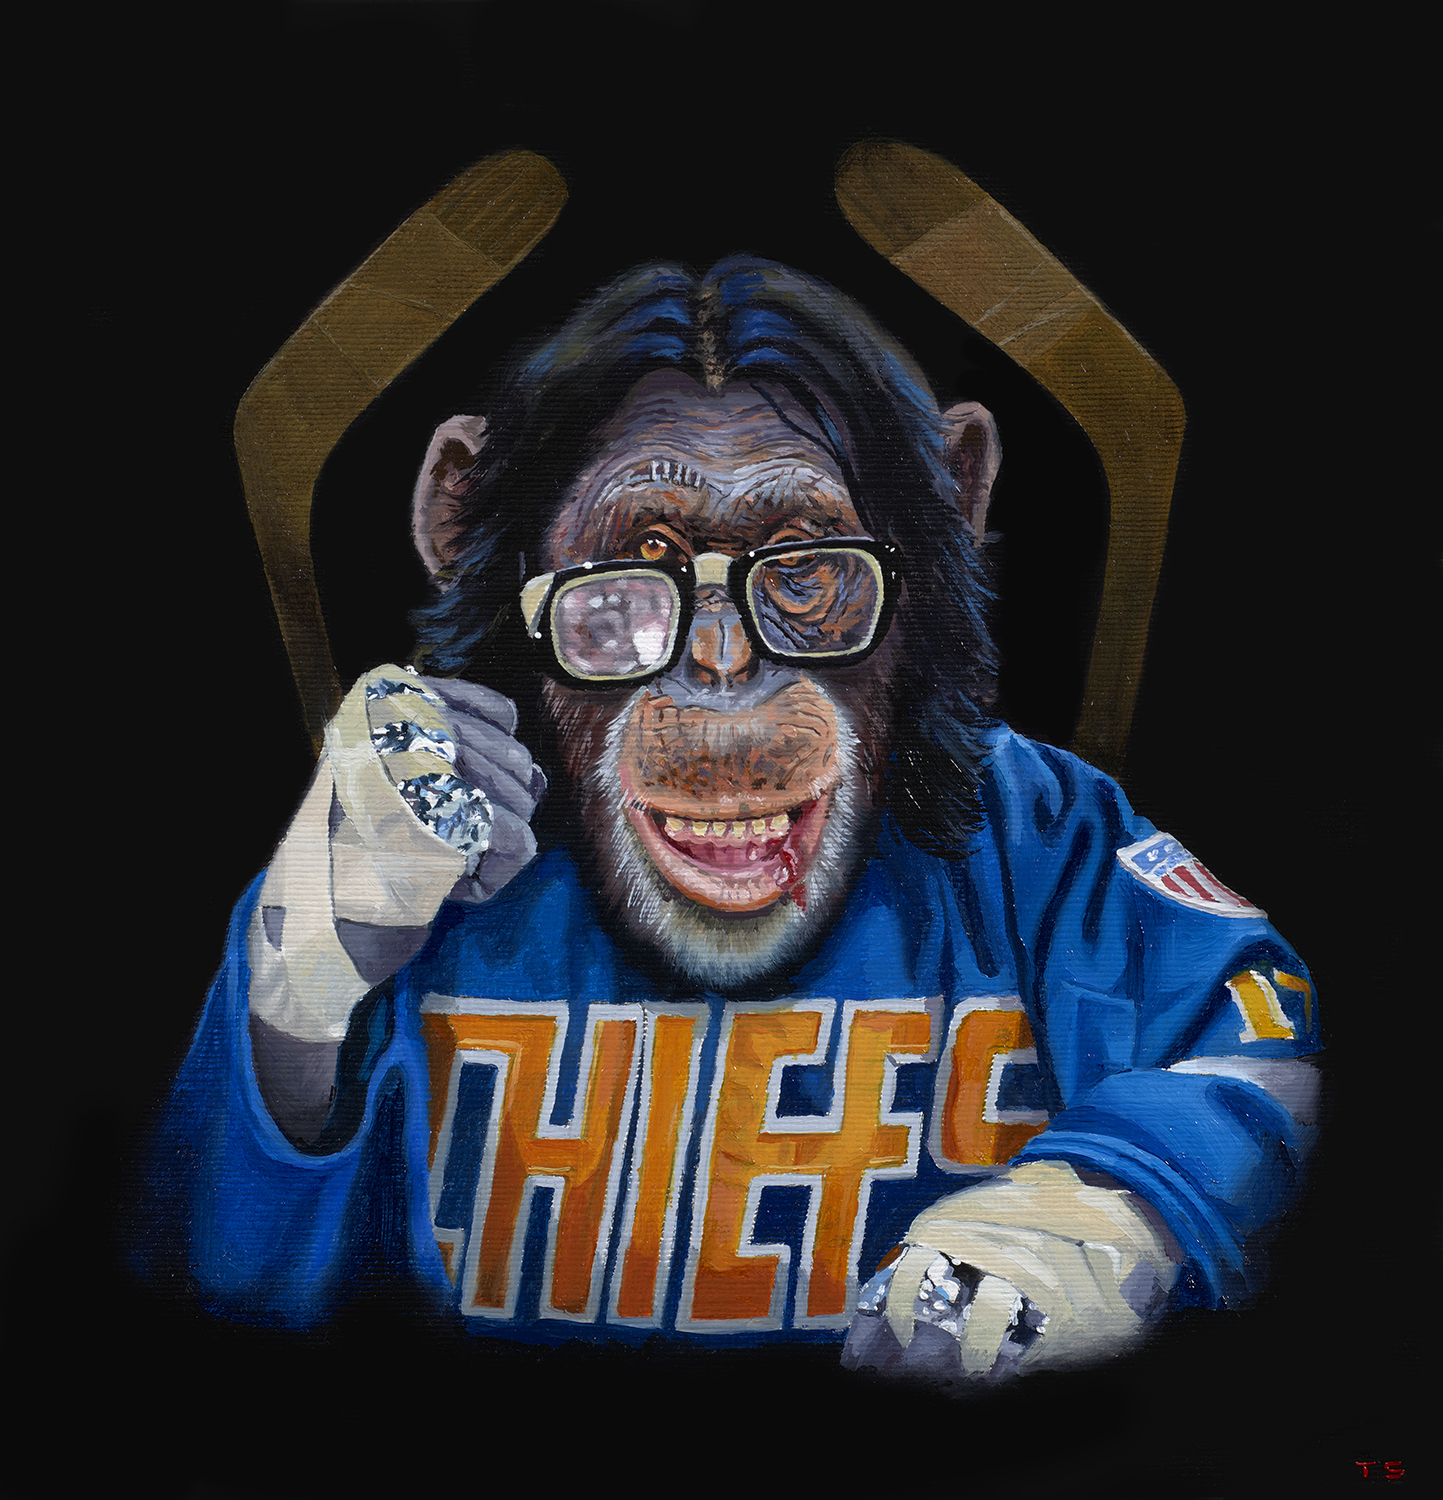 A monkey dressed like a hockey player - Tony South - Puttin On The Foil